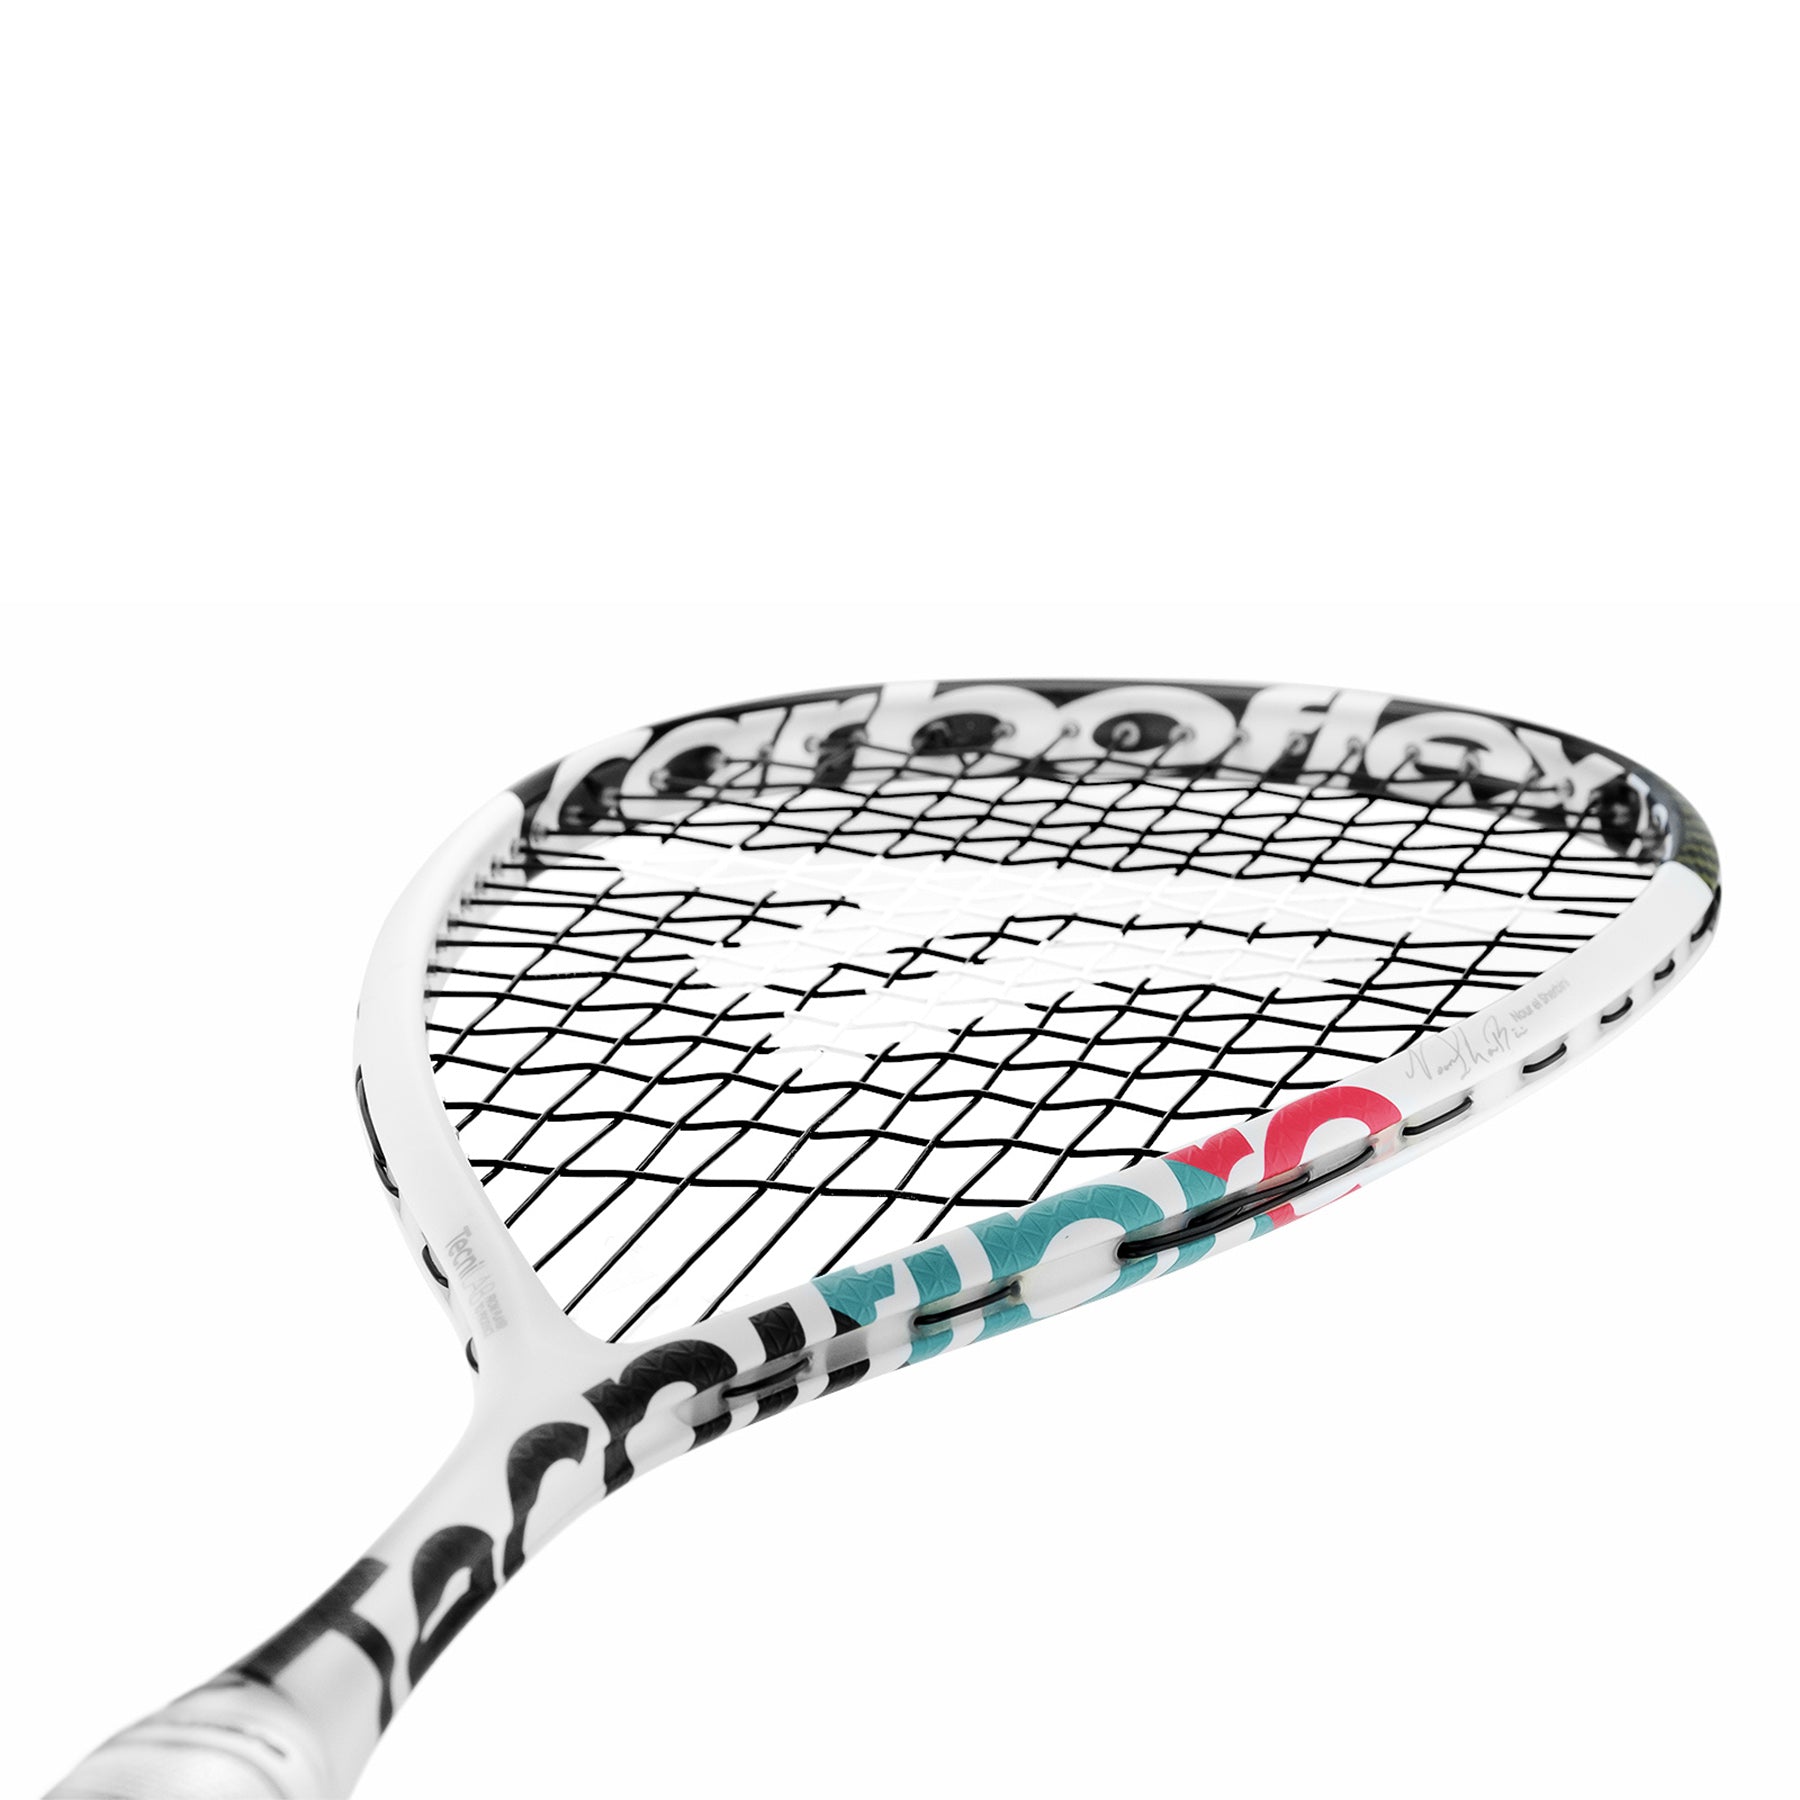 Tecnifibre Carboflex Squash Racket